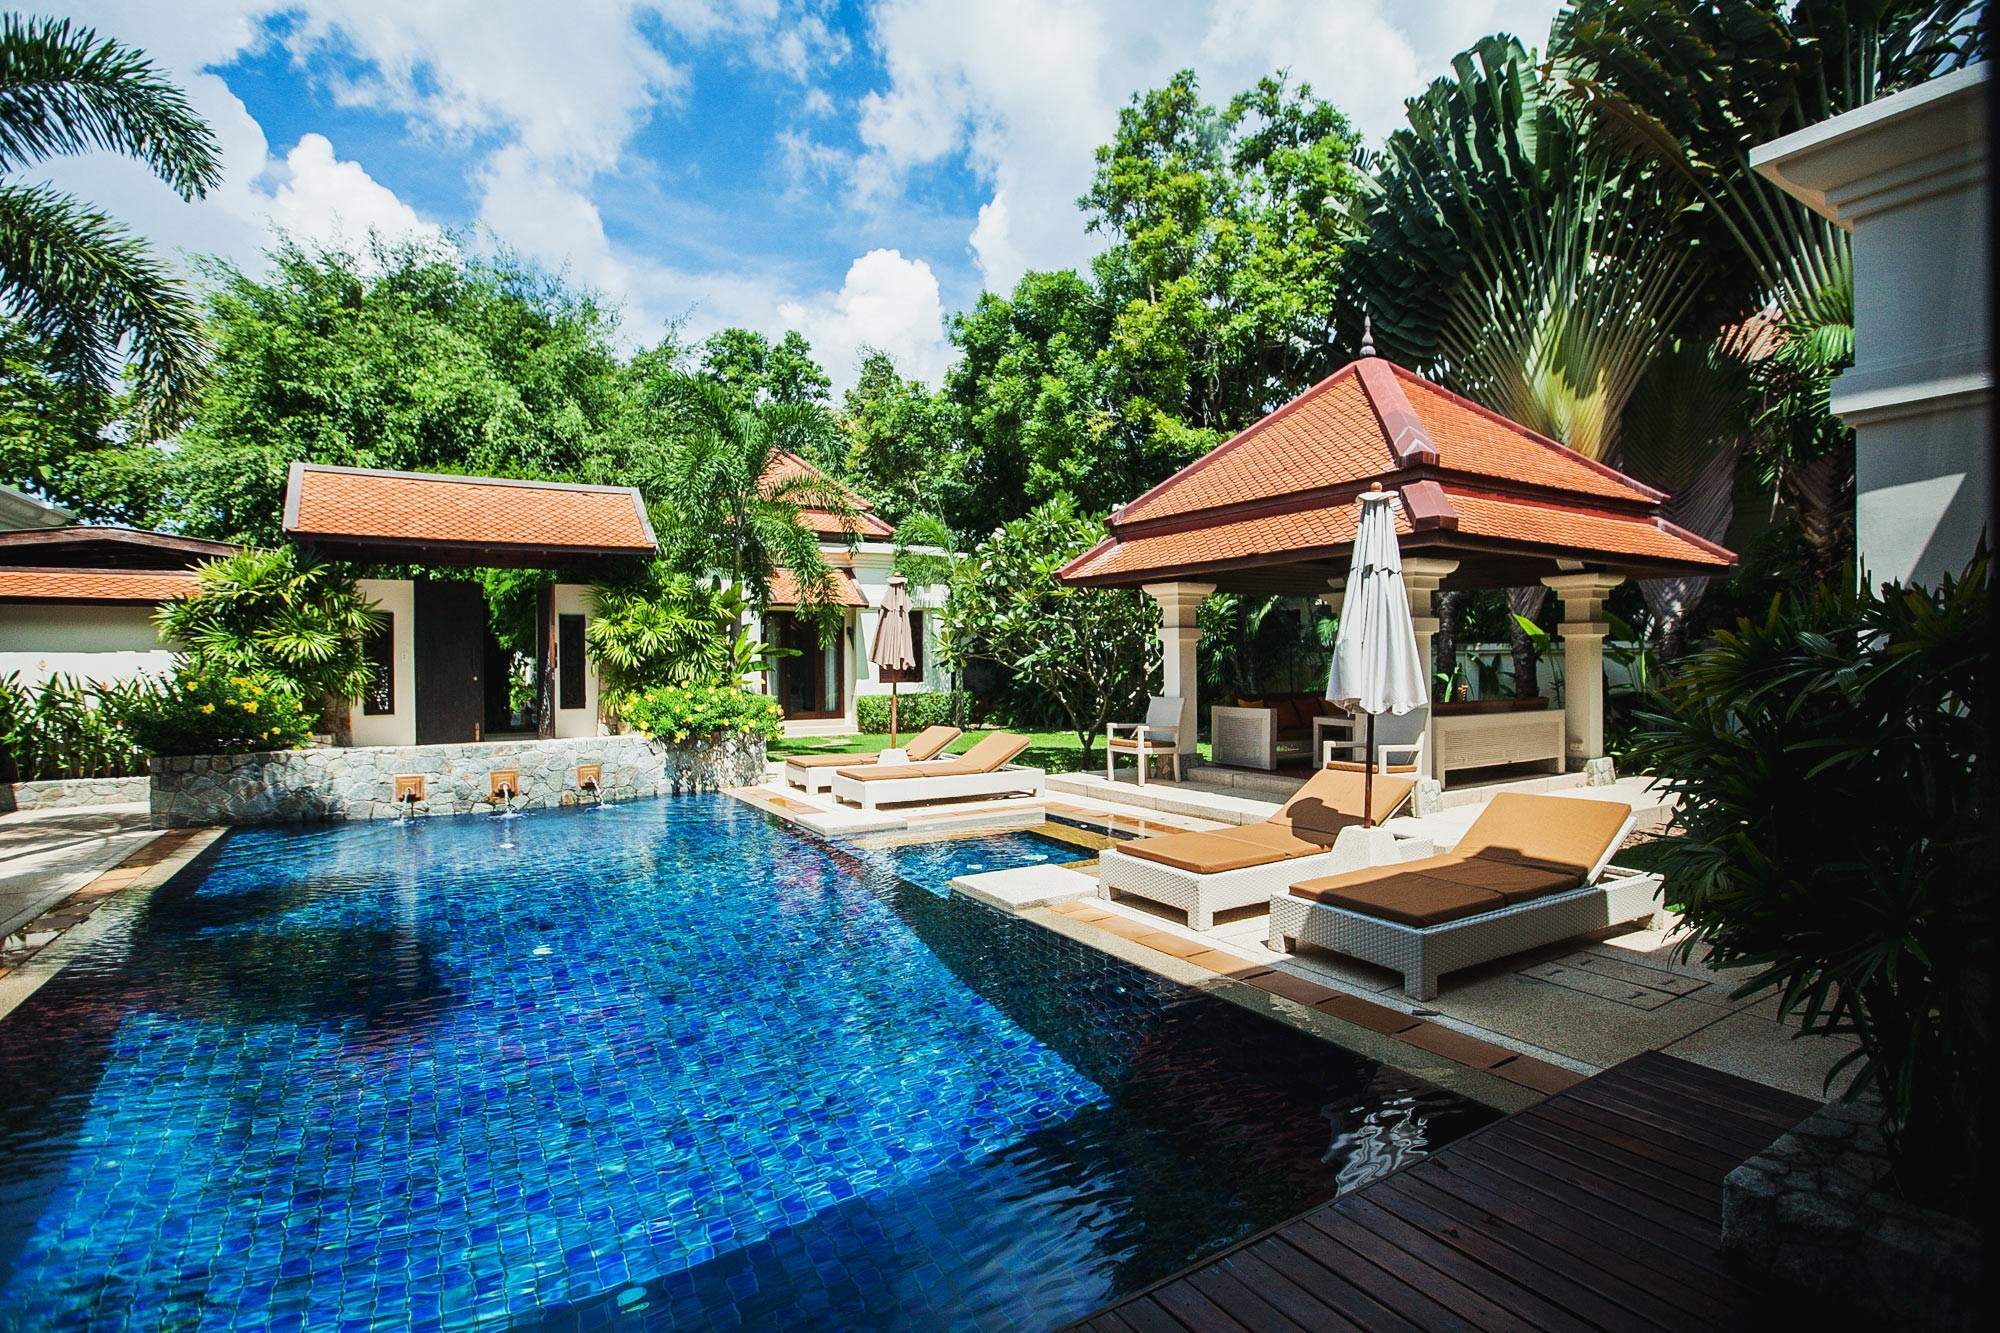 Rent villa Sai Taan 12, Thailand, Phuket, Bang Tao | Villacarte